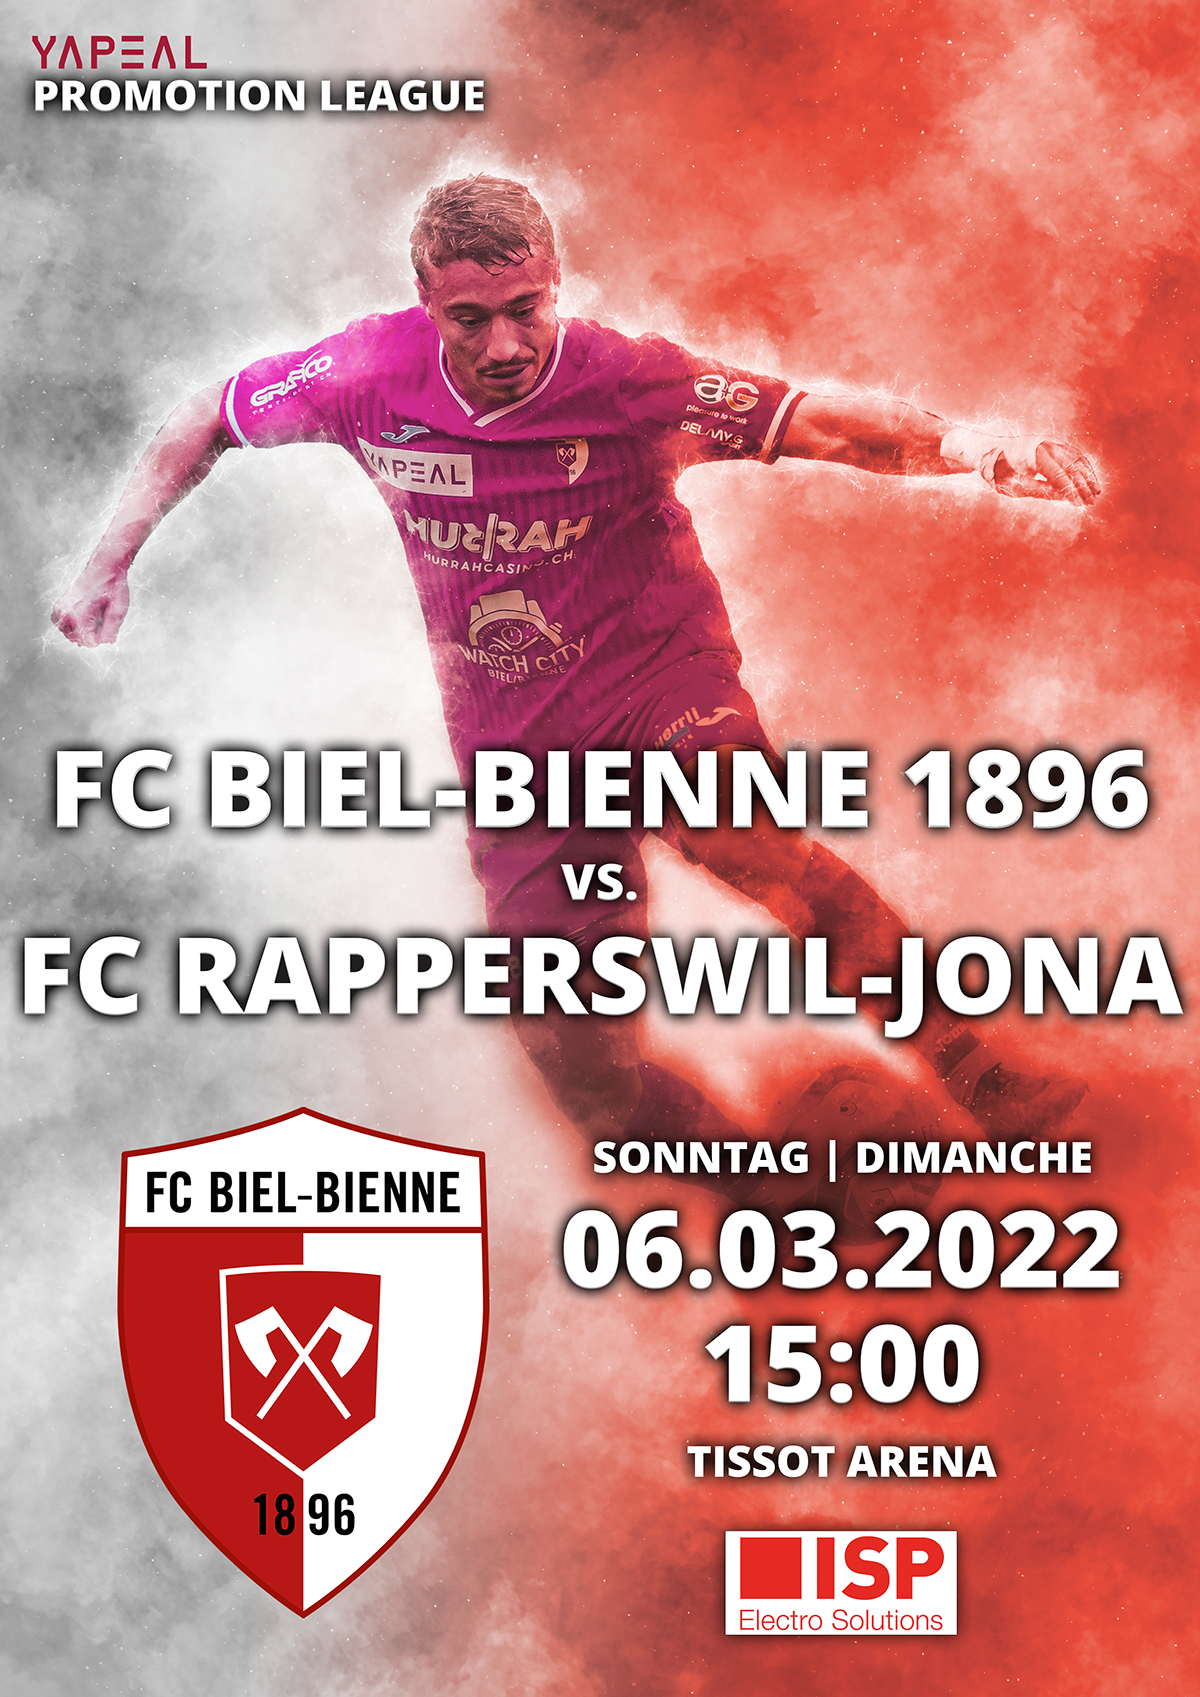 FC Biel-Bienne 1896 vs. FC Rapperswil-Jona